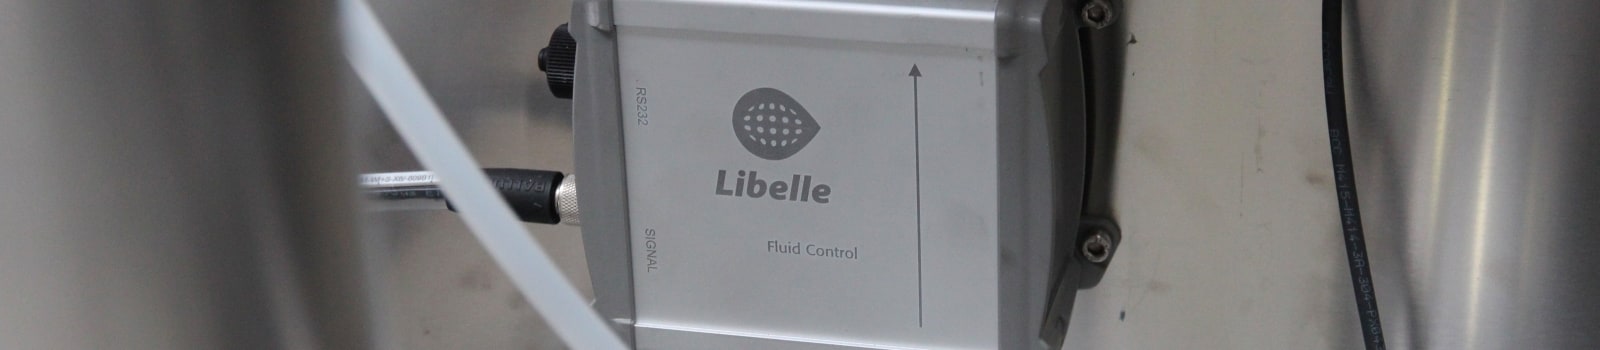 Система технологического контроля Libelle